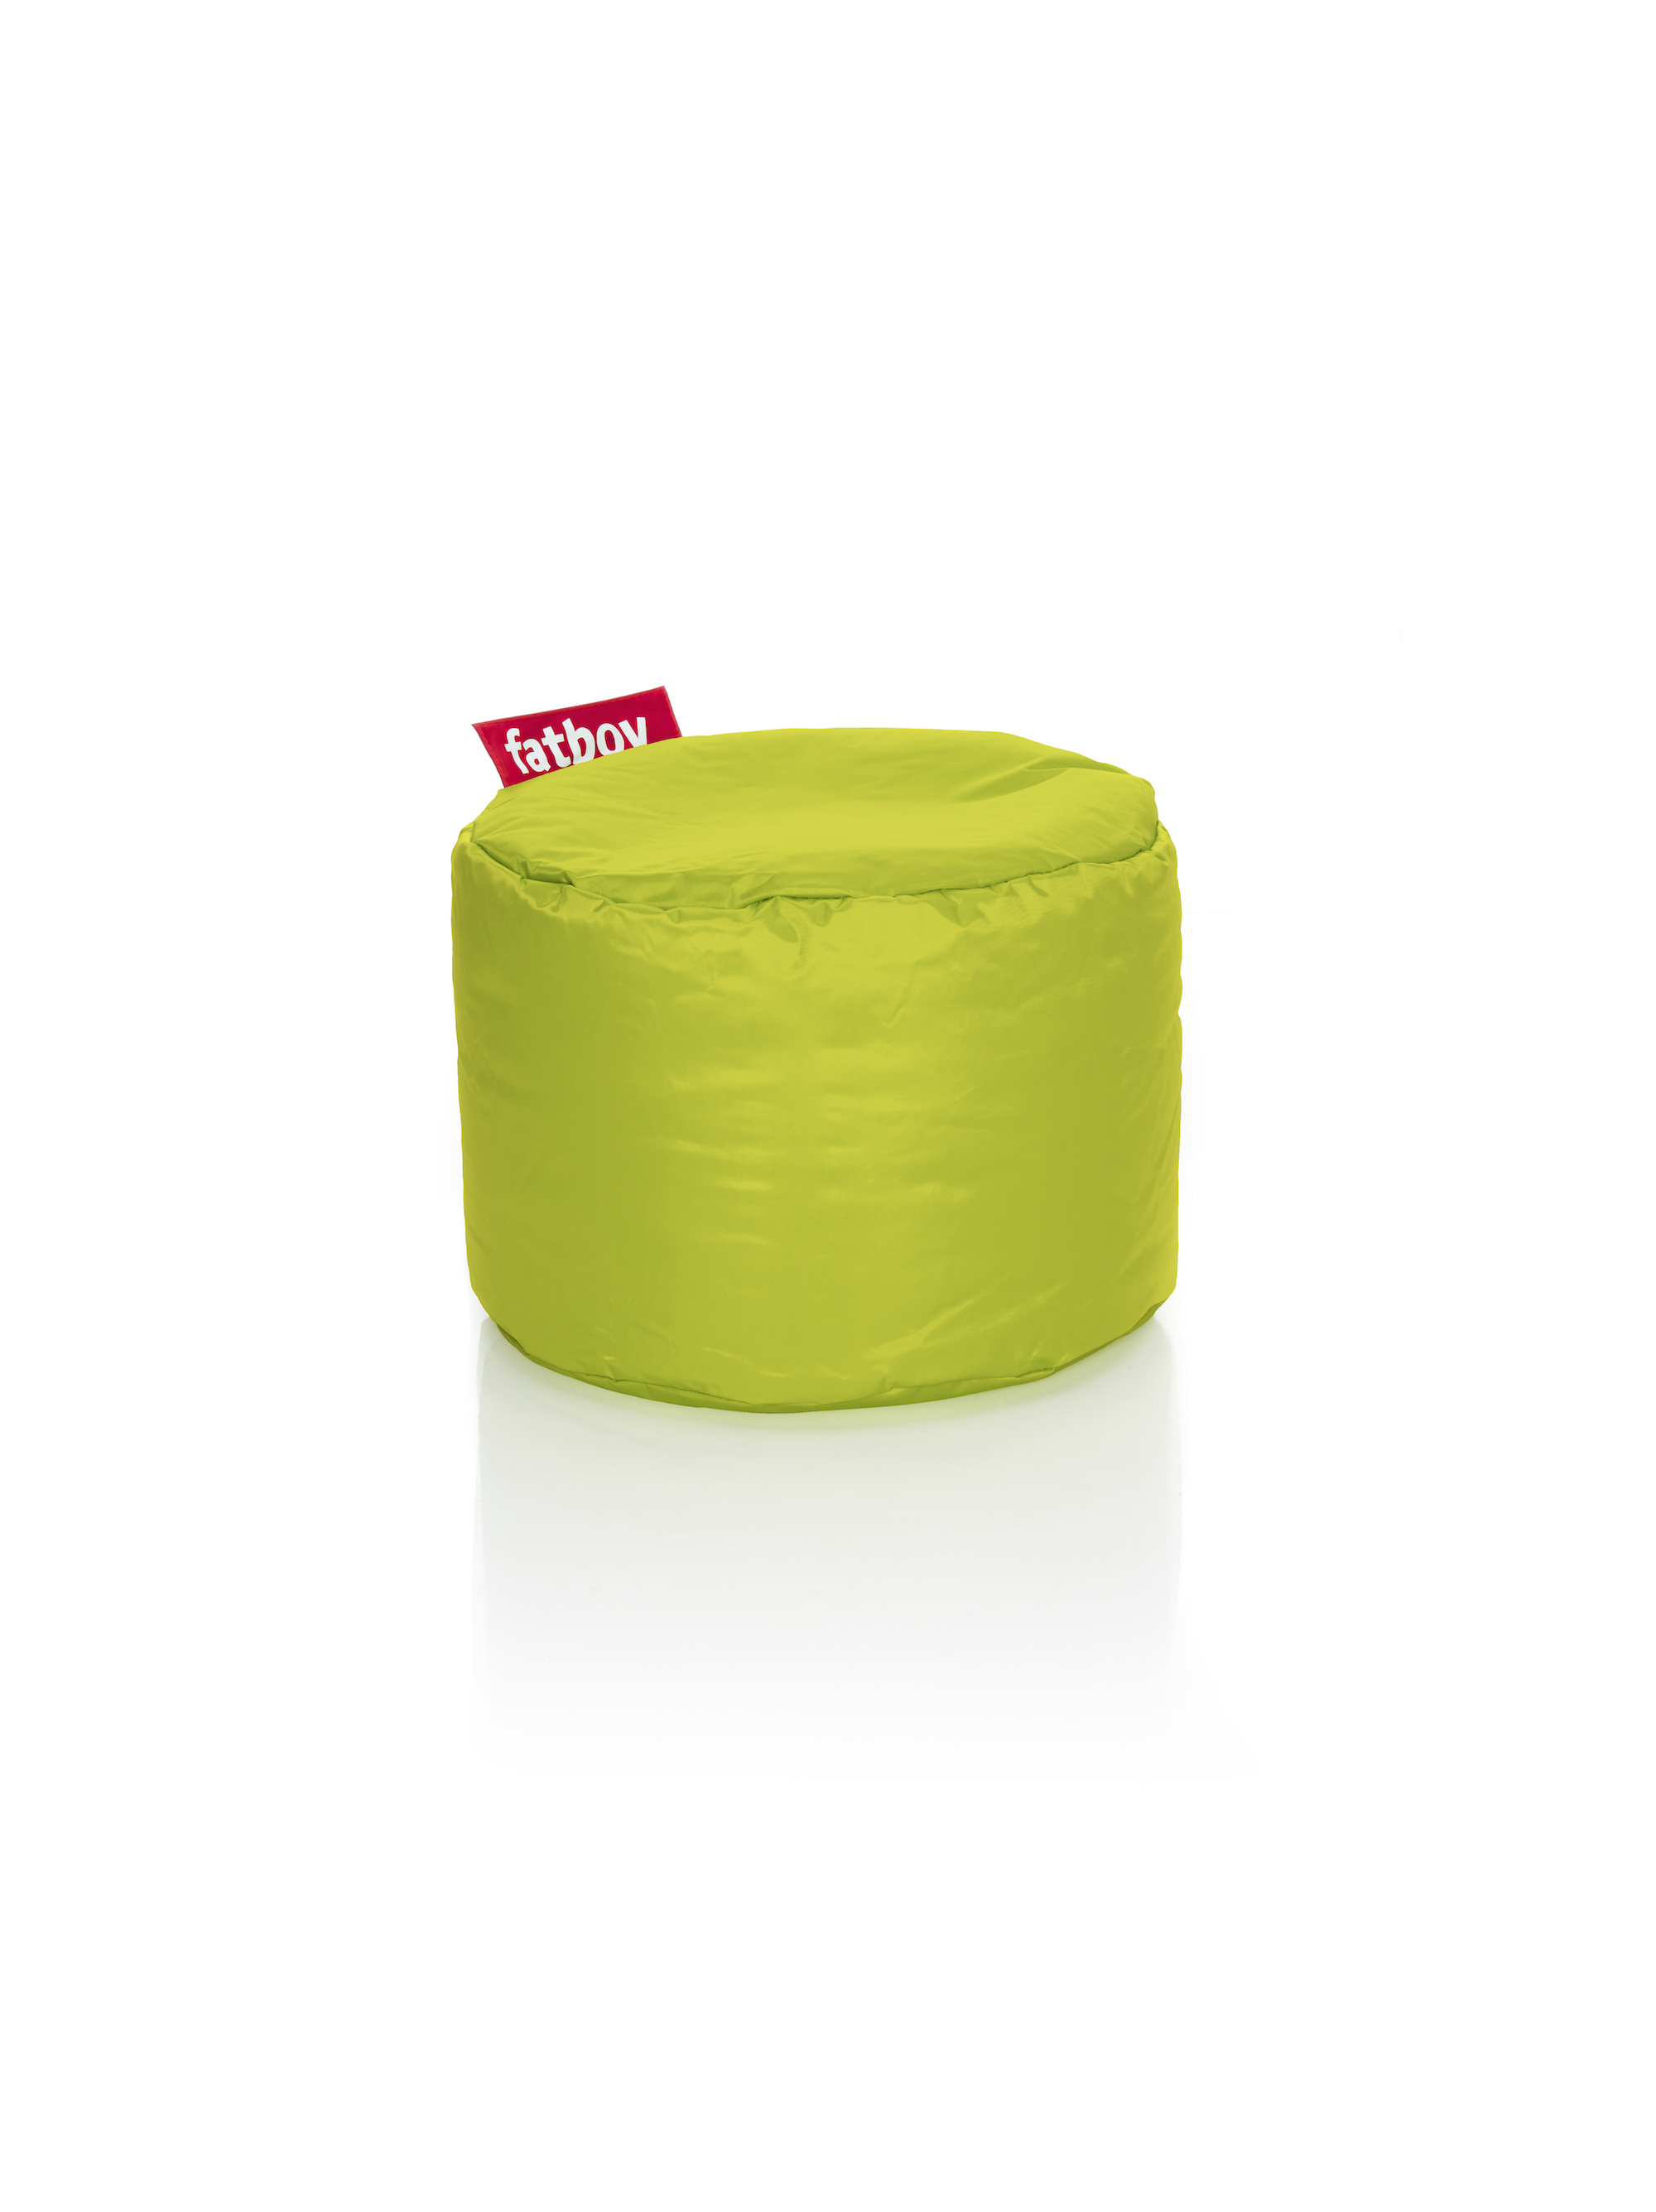 Chair cushion / bean bag pillow 'Point', 14 variants - Fatboy® Color: lime green